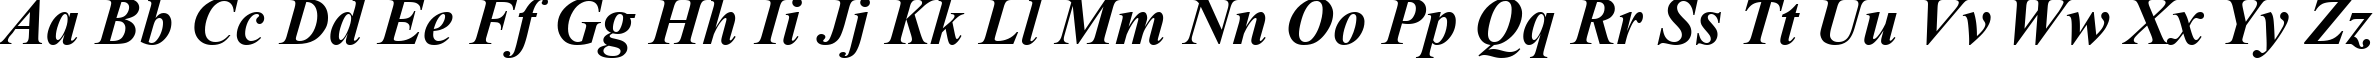 Пример написания английского алфавита шрифтом font237